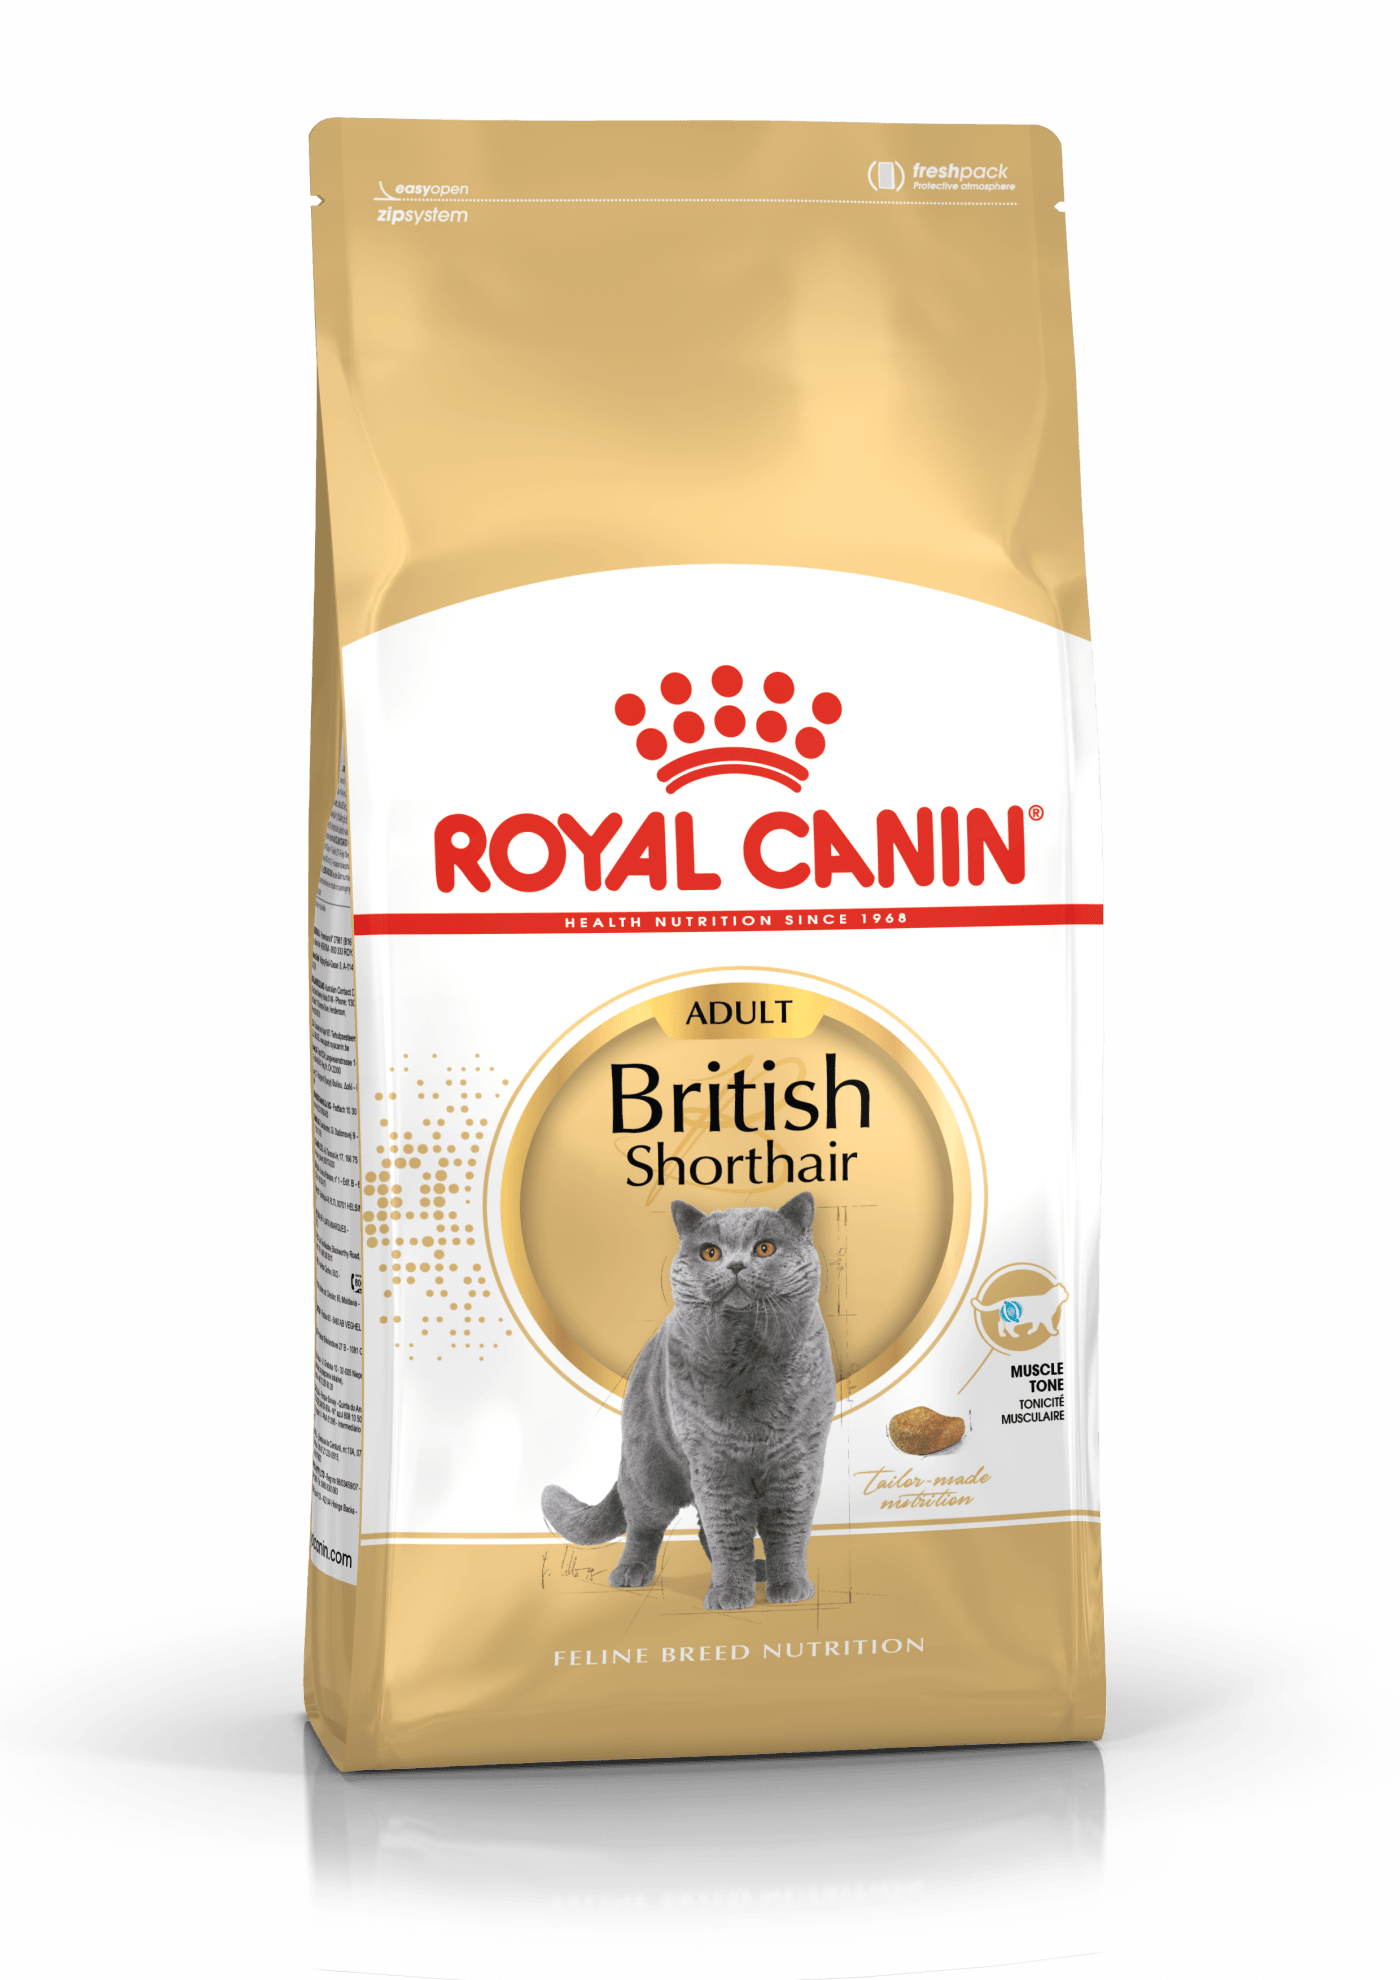 【Royal Canin】法國皇家貓乾糧 - 英國短毛貓專屬配方 (成 / 幼貓) - Pet Pet Plaza